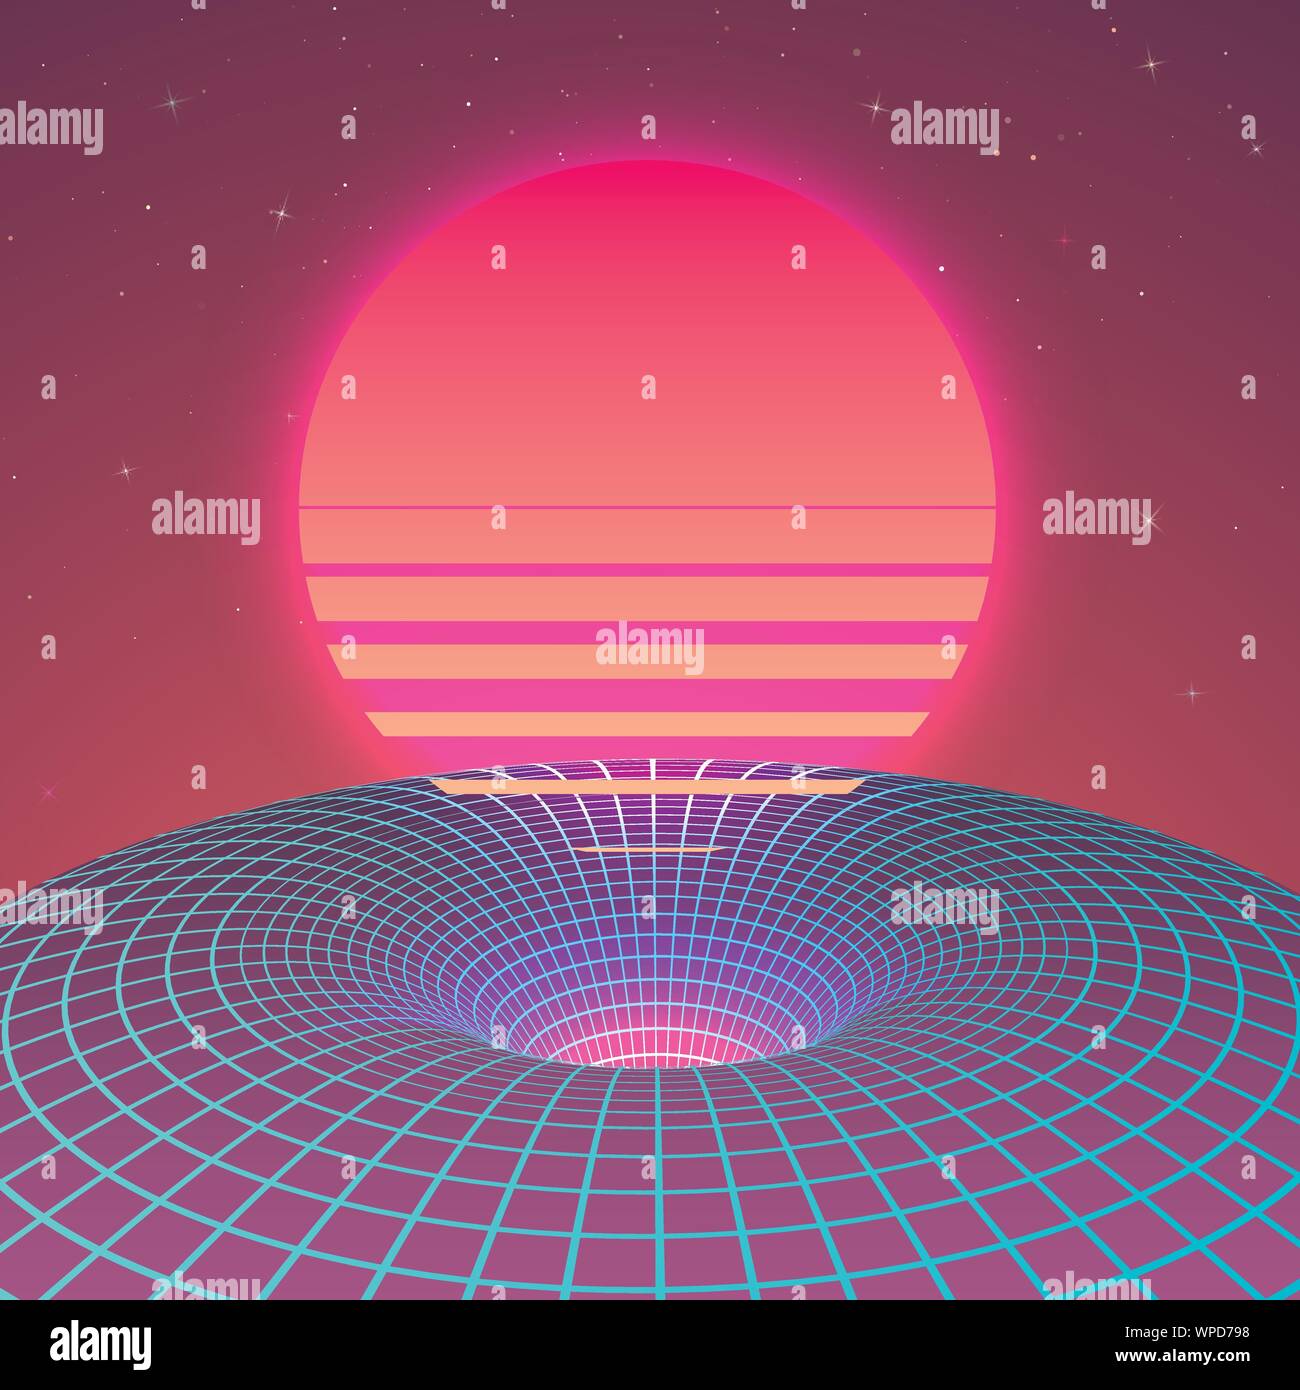 Warp Raum - Schwarzes Loch in Neon Farben der 80er. Hintergrund oder Abdeckung für retrowave Musik Stil. Vektor Stock Vektor